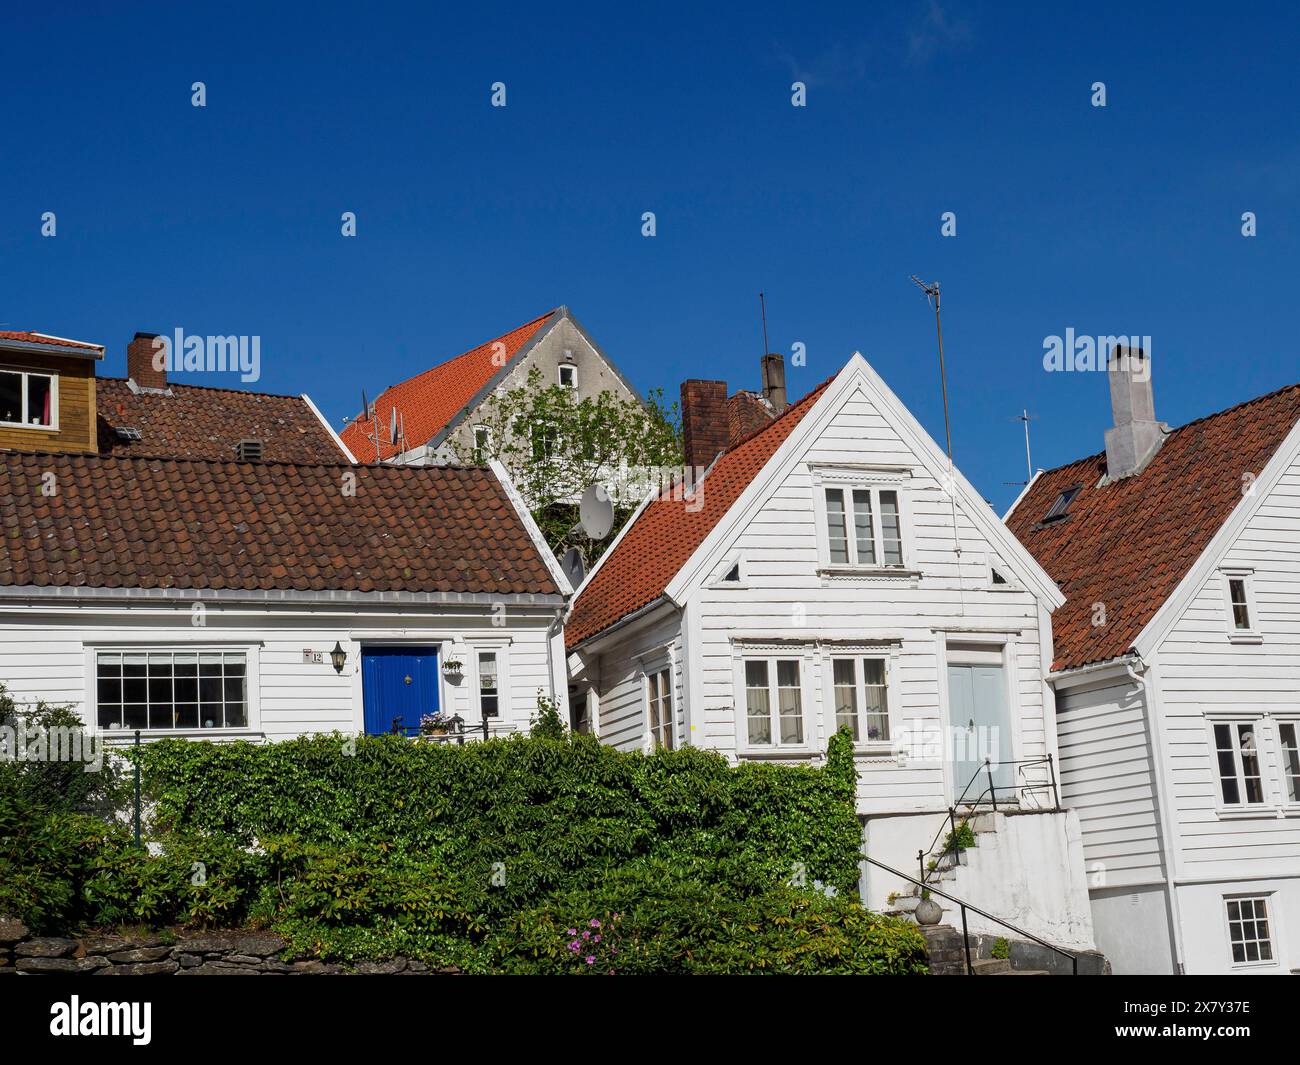 Maisons blanches avec des toits de tuiles et de la végétation contre un ciel bleu, maisons blanches en bois avec des toits rouges contre un ciel bleu, arbres et clôtures blanches le long de t Banque D'Images